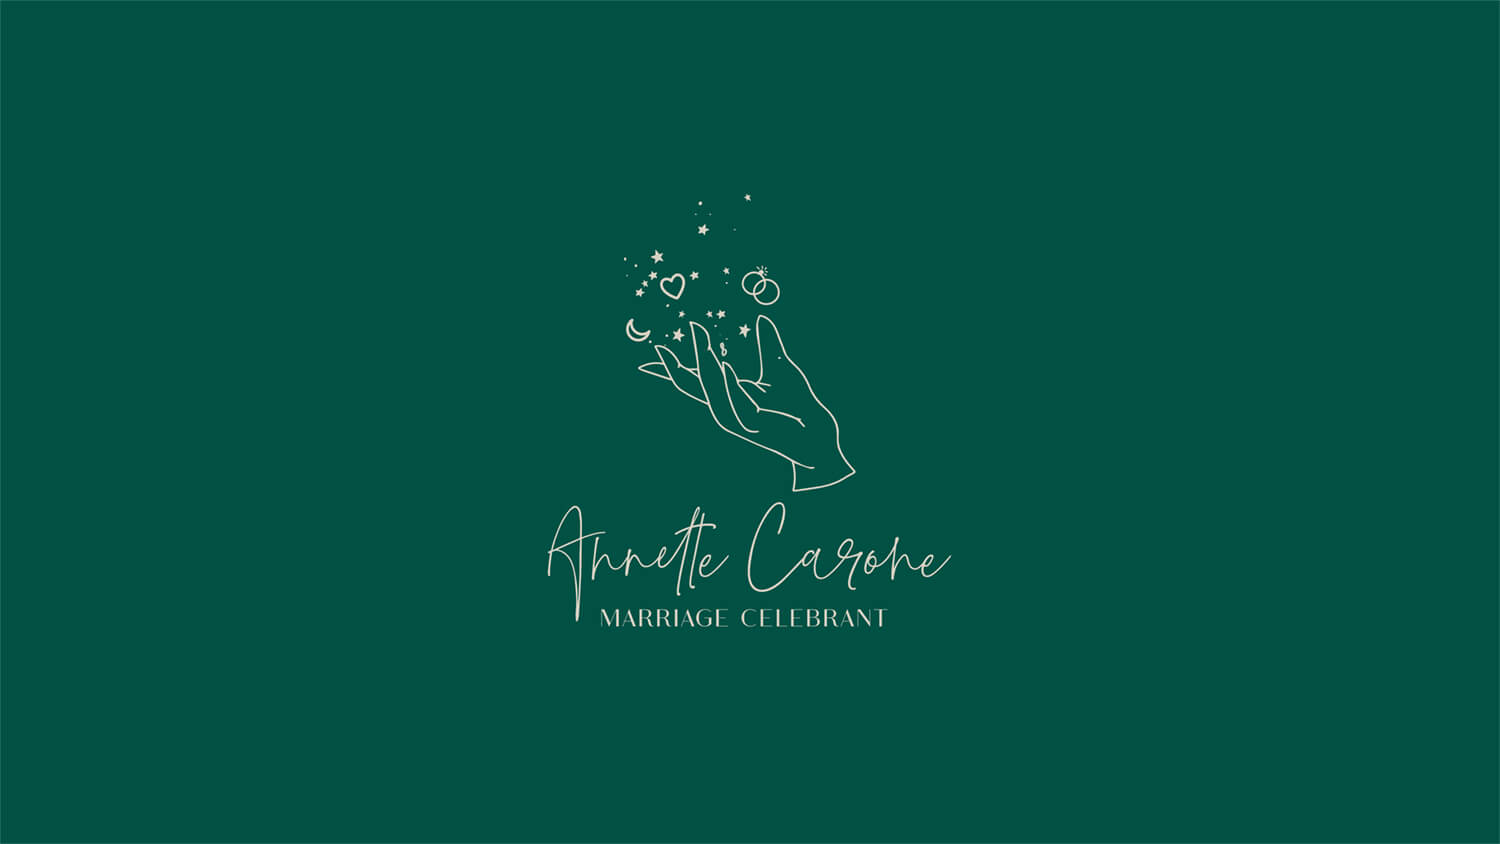 Business Branding - Annette Carone, Marriage Celebrant - Perth WA